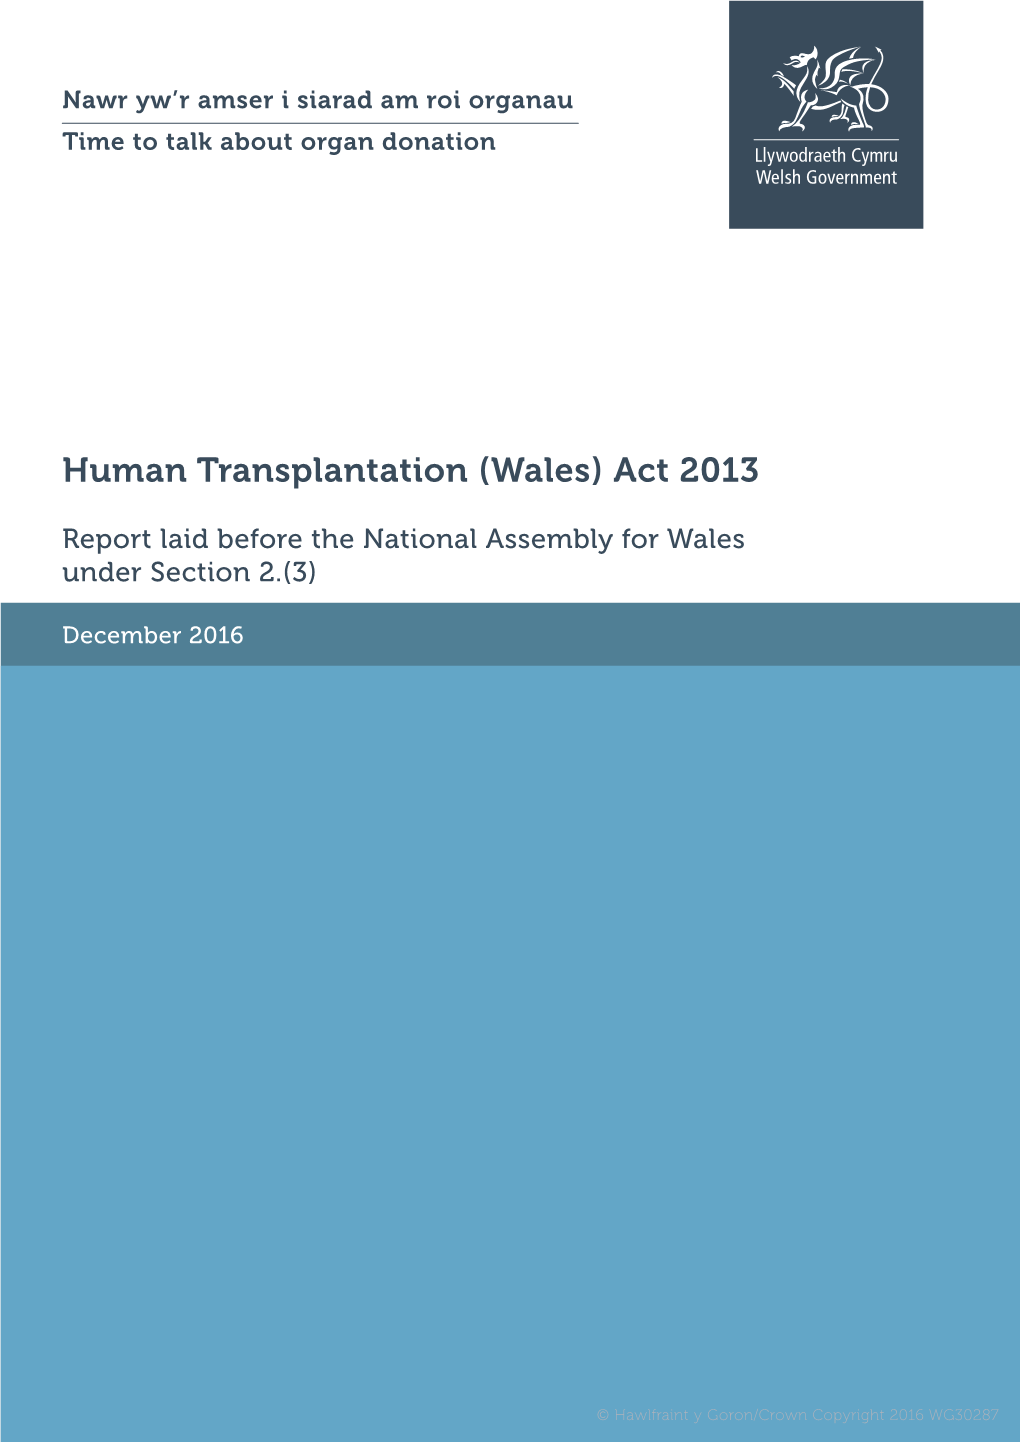 Human Transplantation (Wales) Act 2013